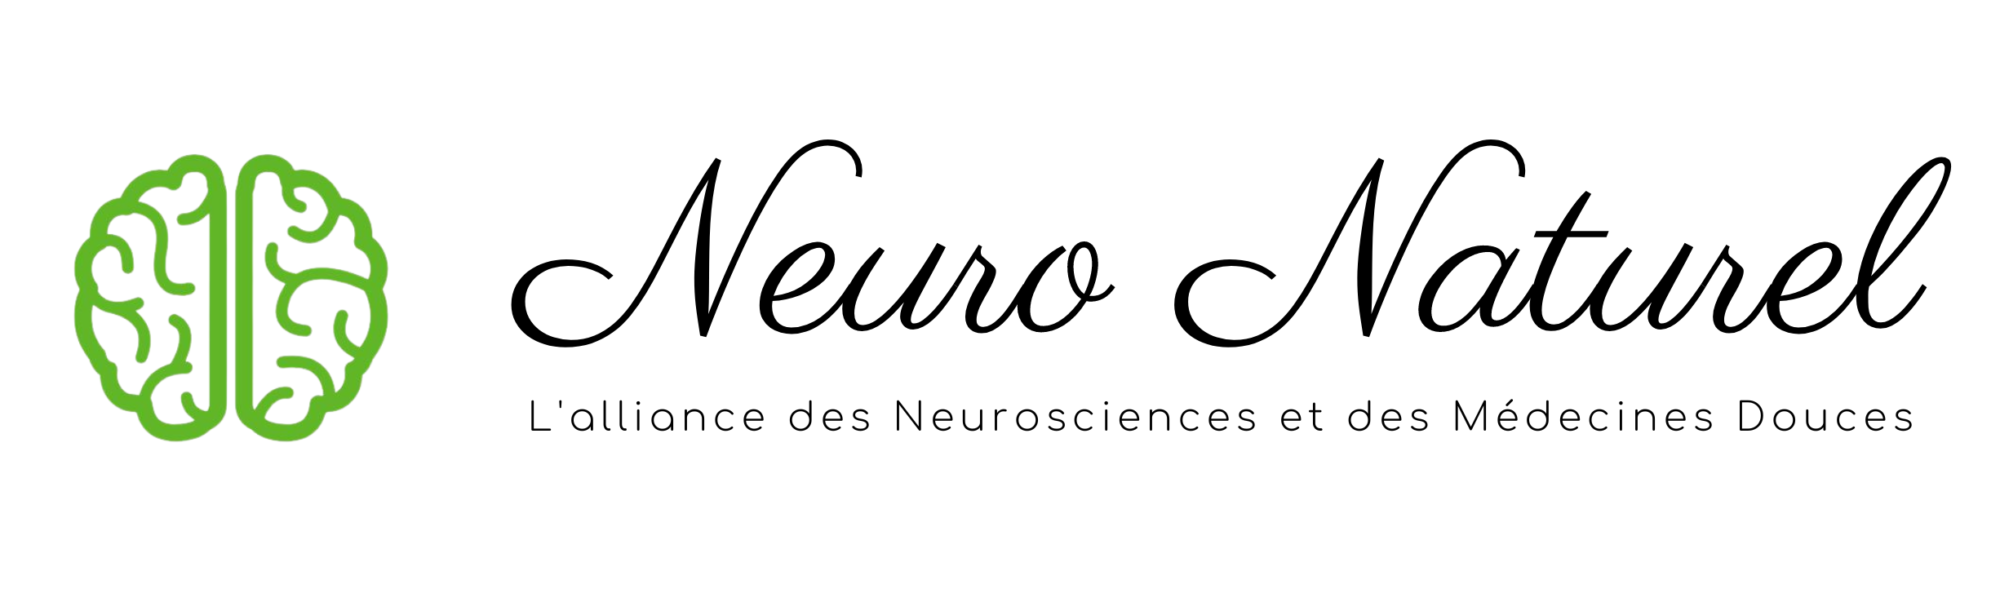 Logo Neuro Naturel - L'alliance des Neurosciences et des Médecines douces